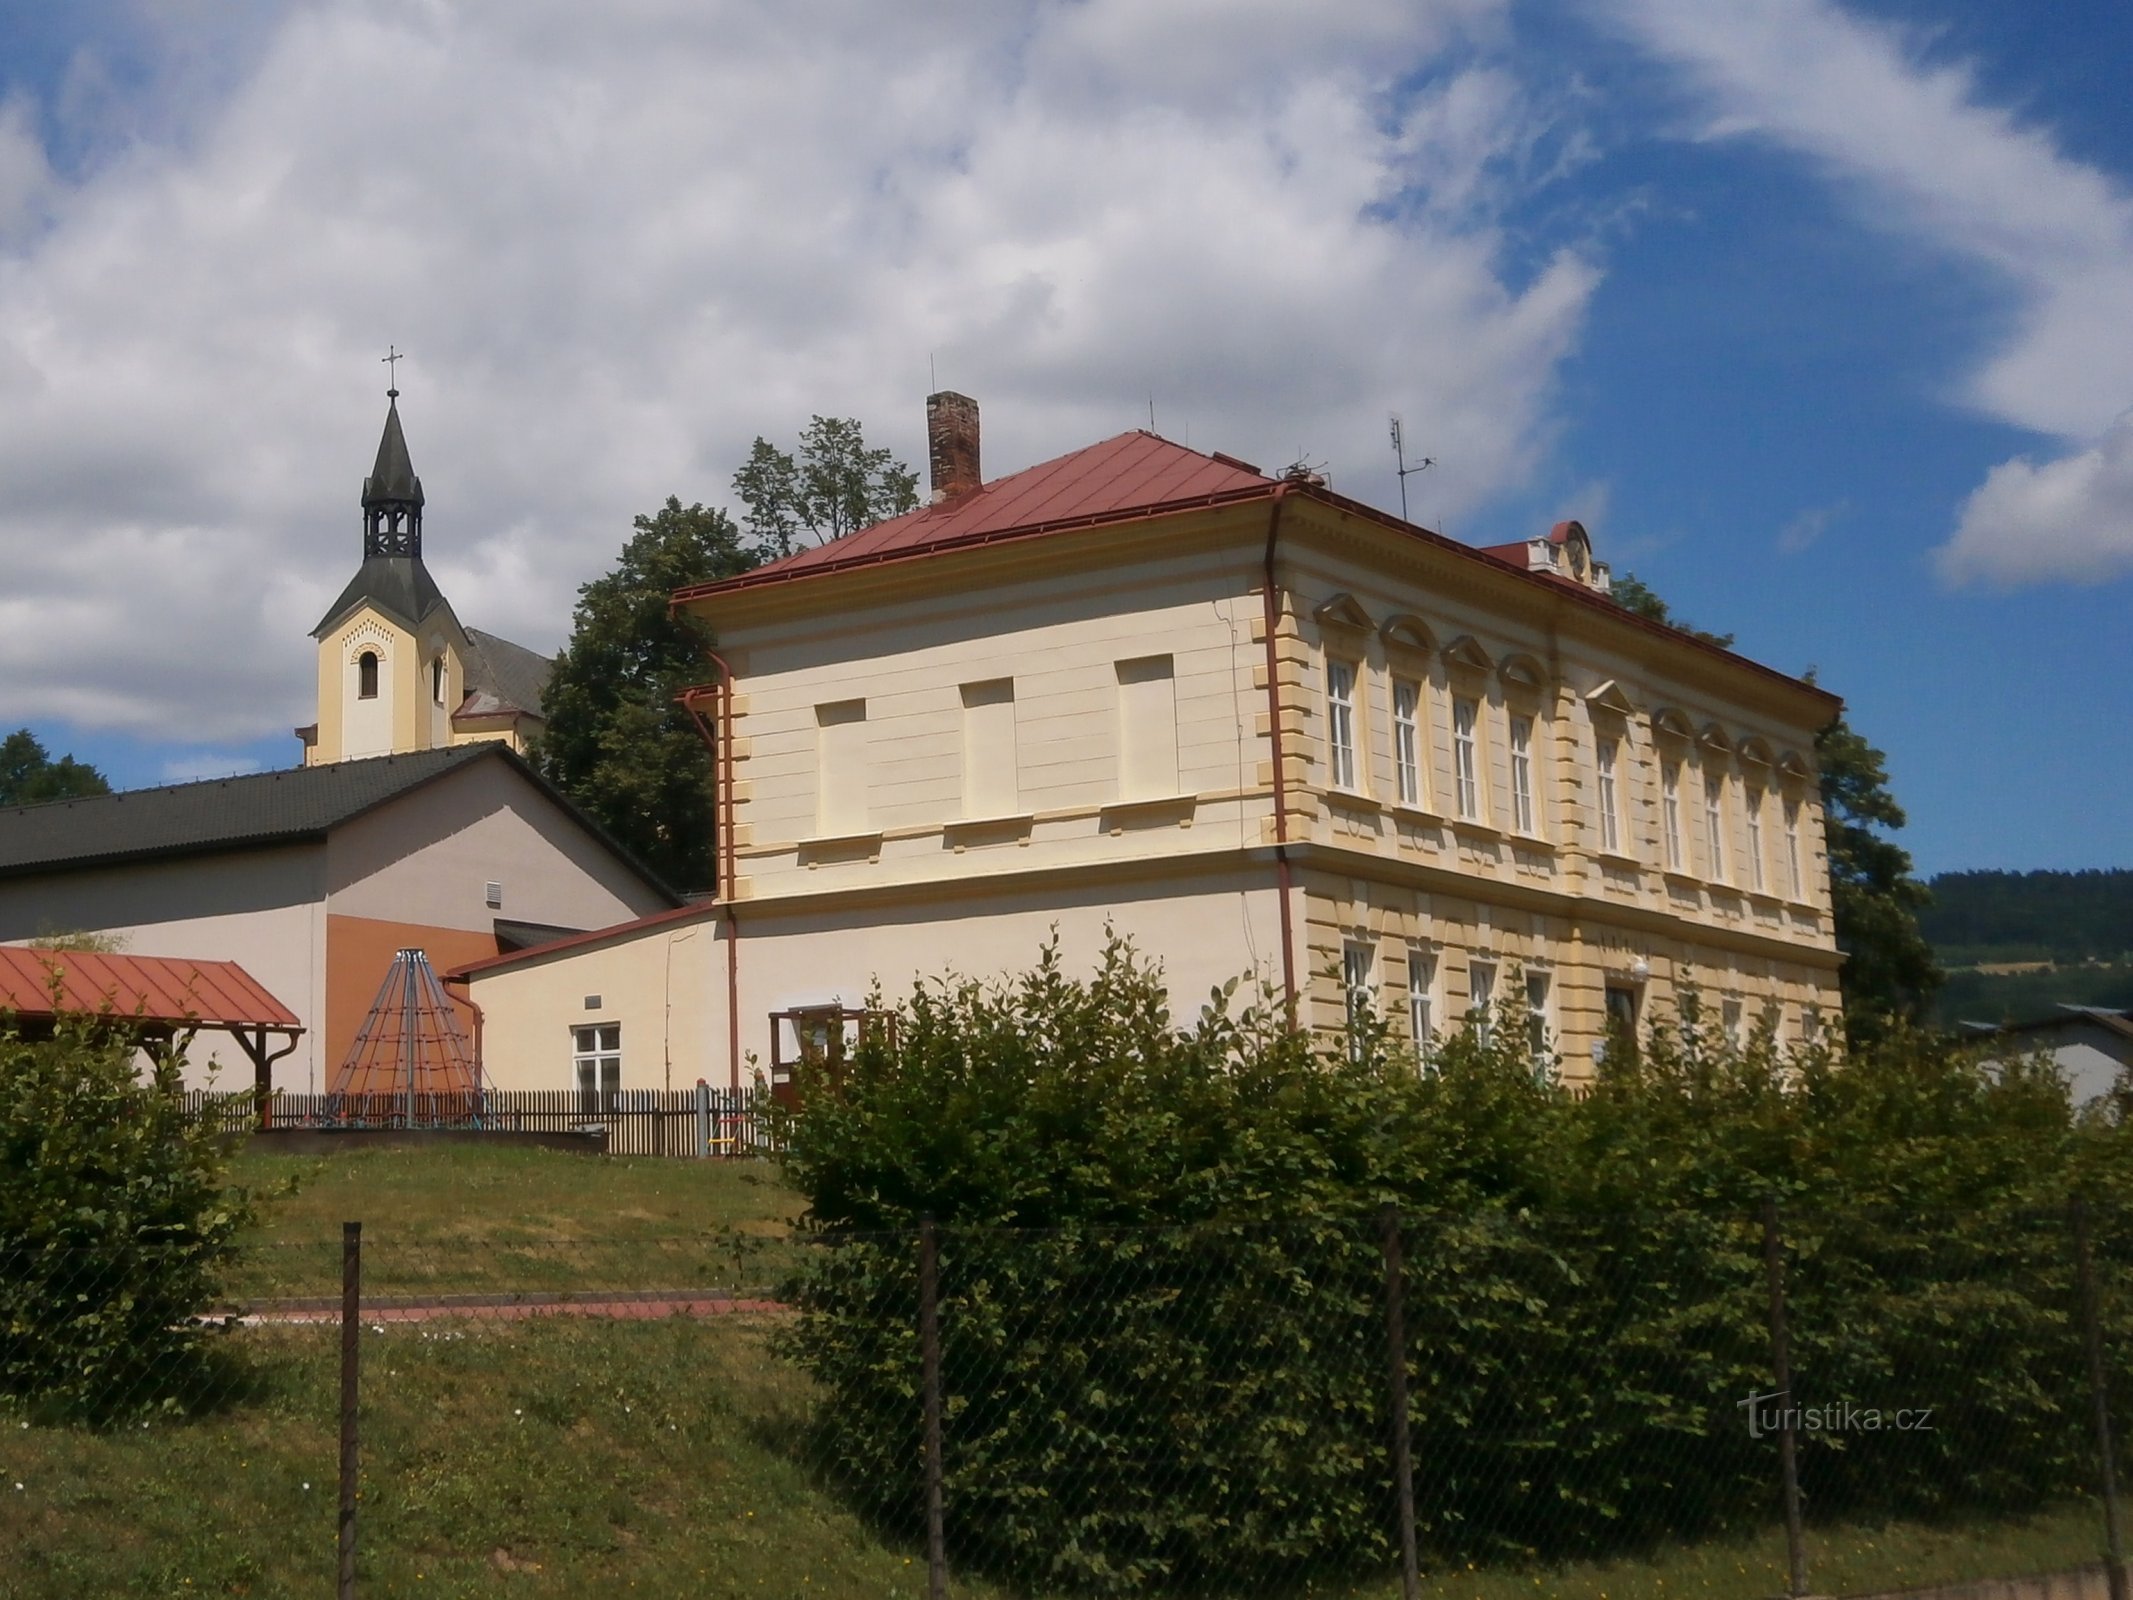 Schule mit Kirche im Hintergrund (Batňovice, 3.7.2017. Juli XNUMX)